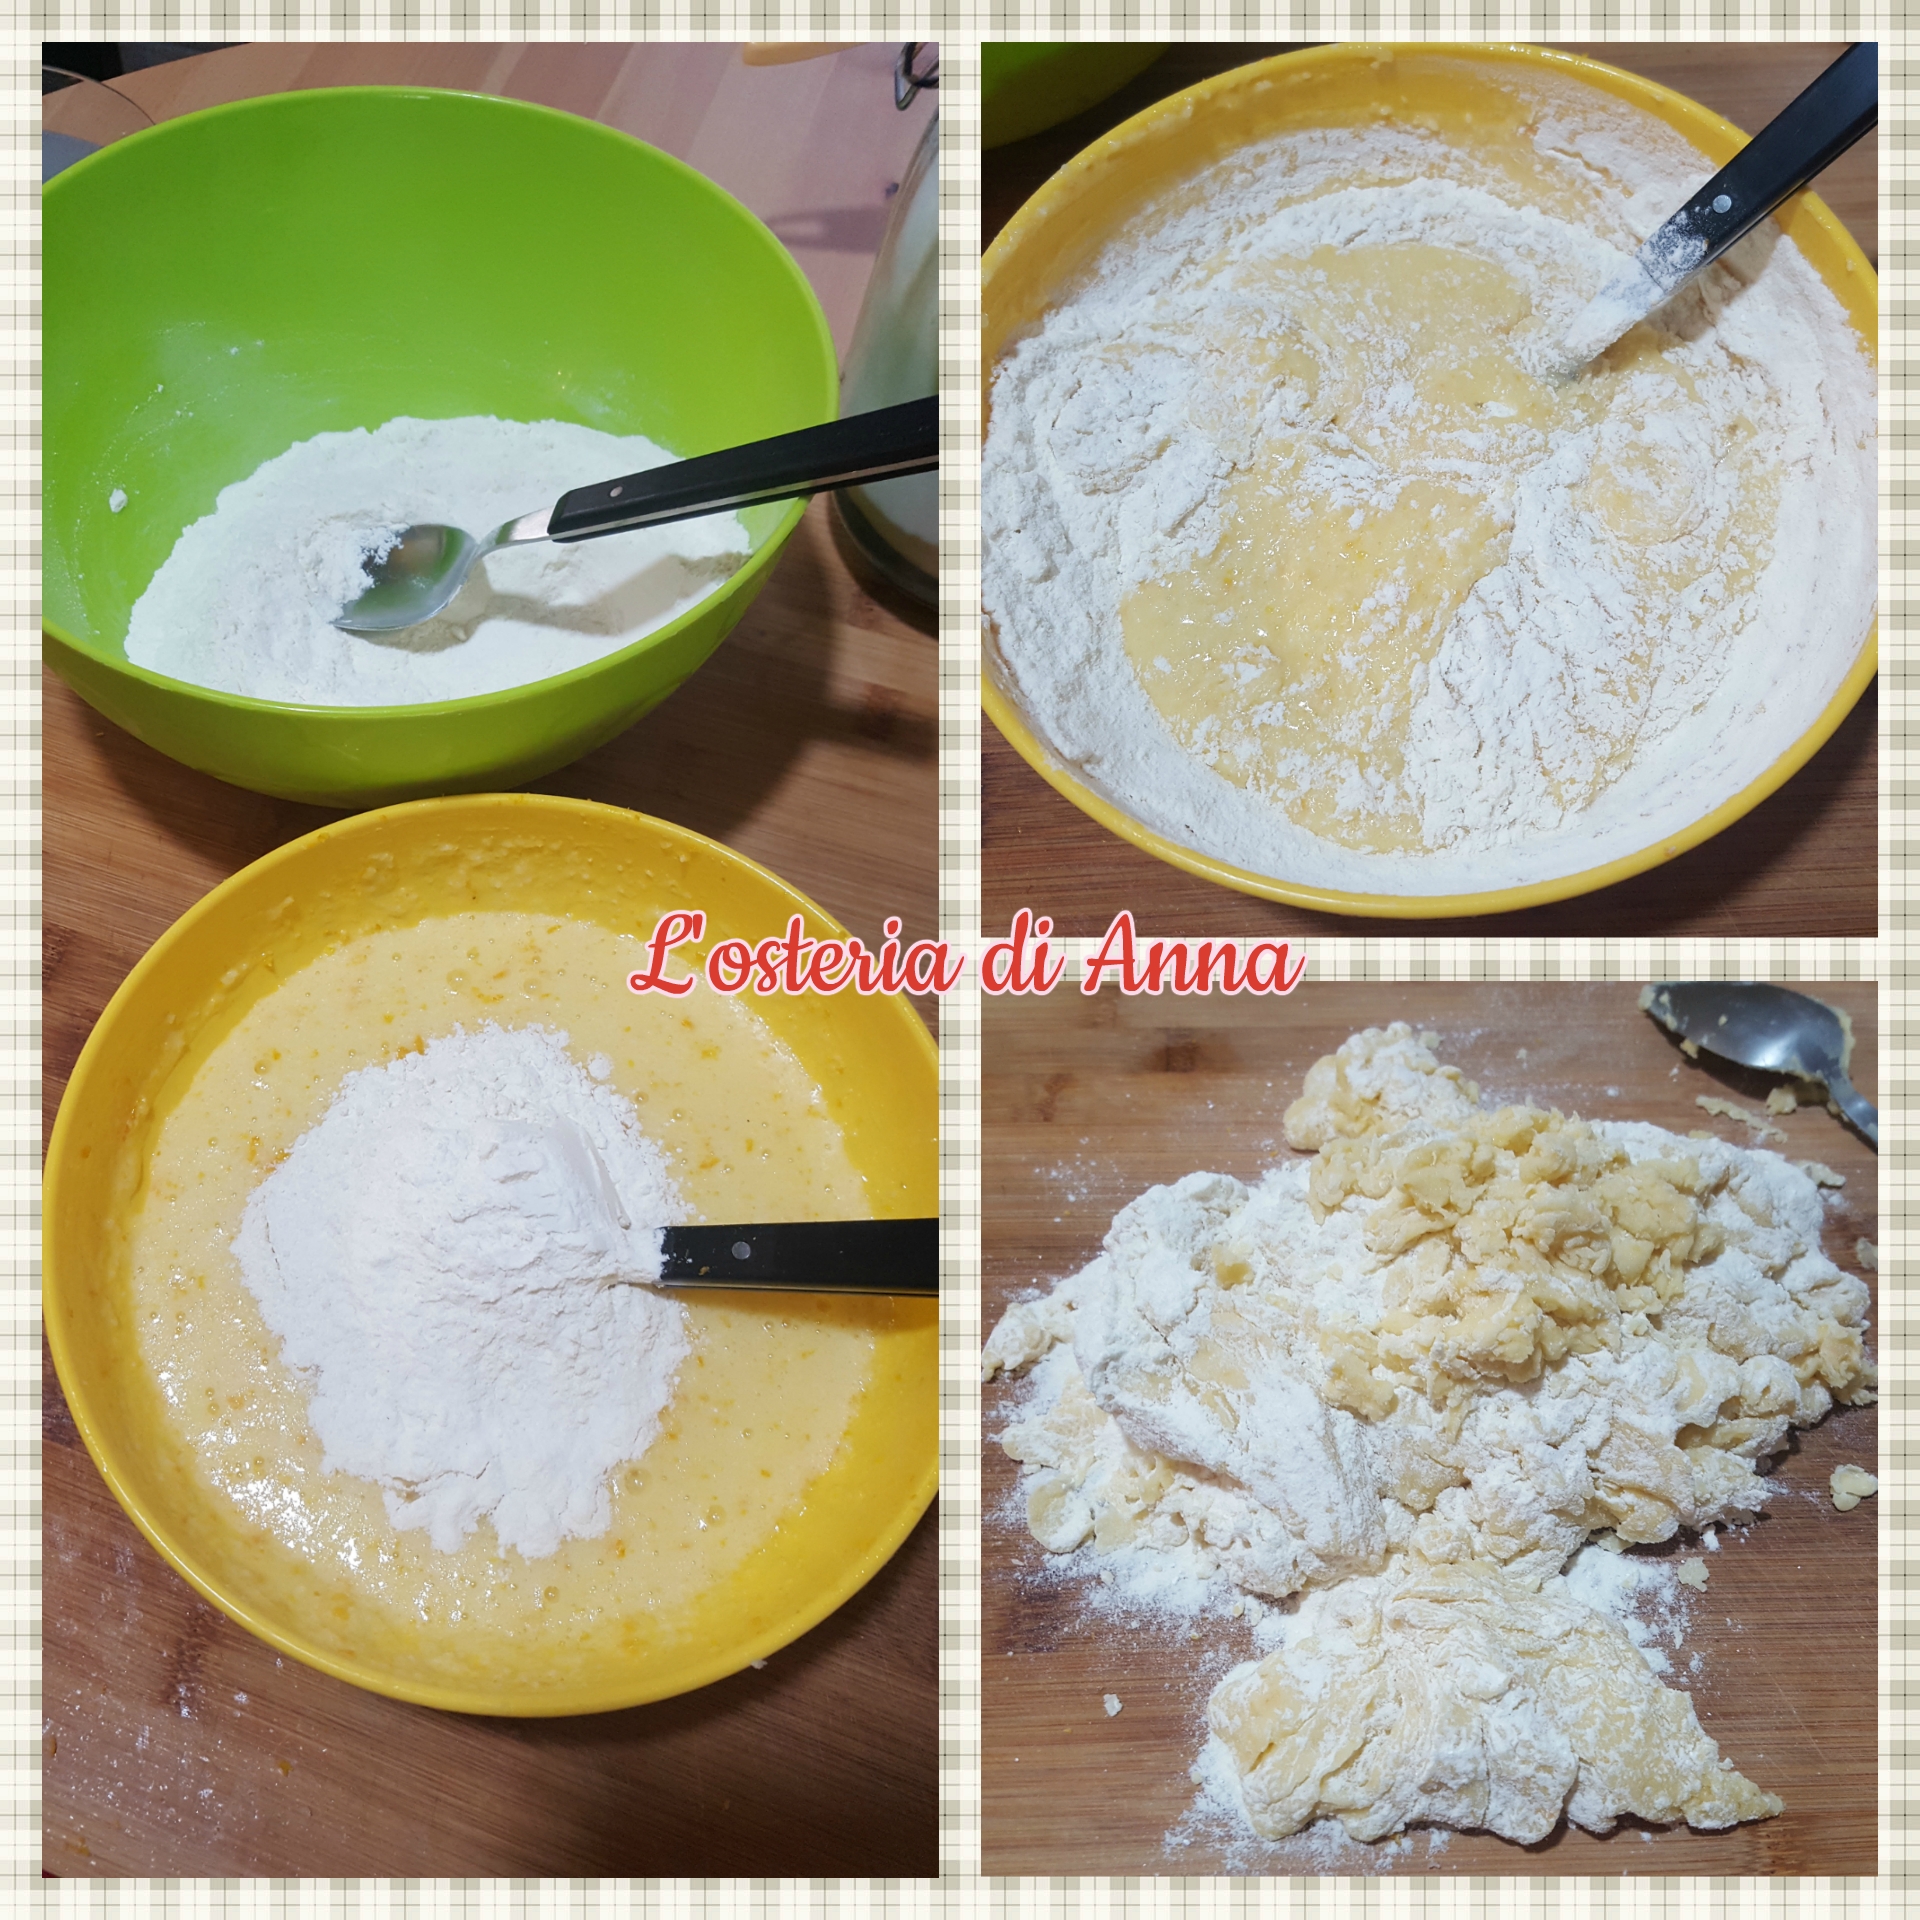 Unire la farina al composto di uova e impastare